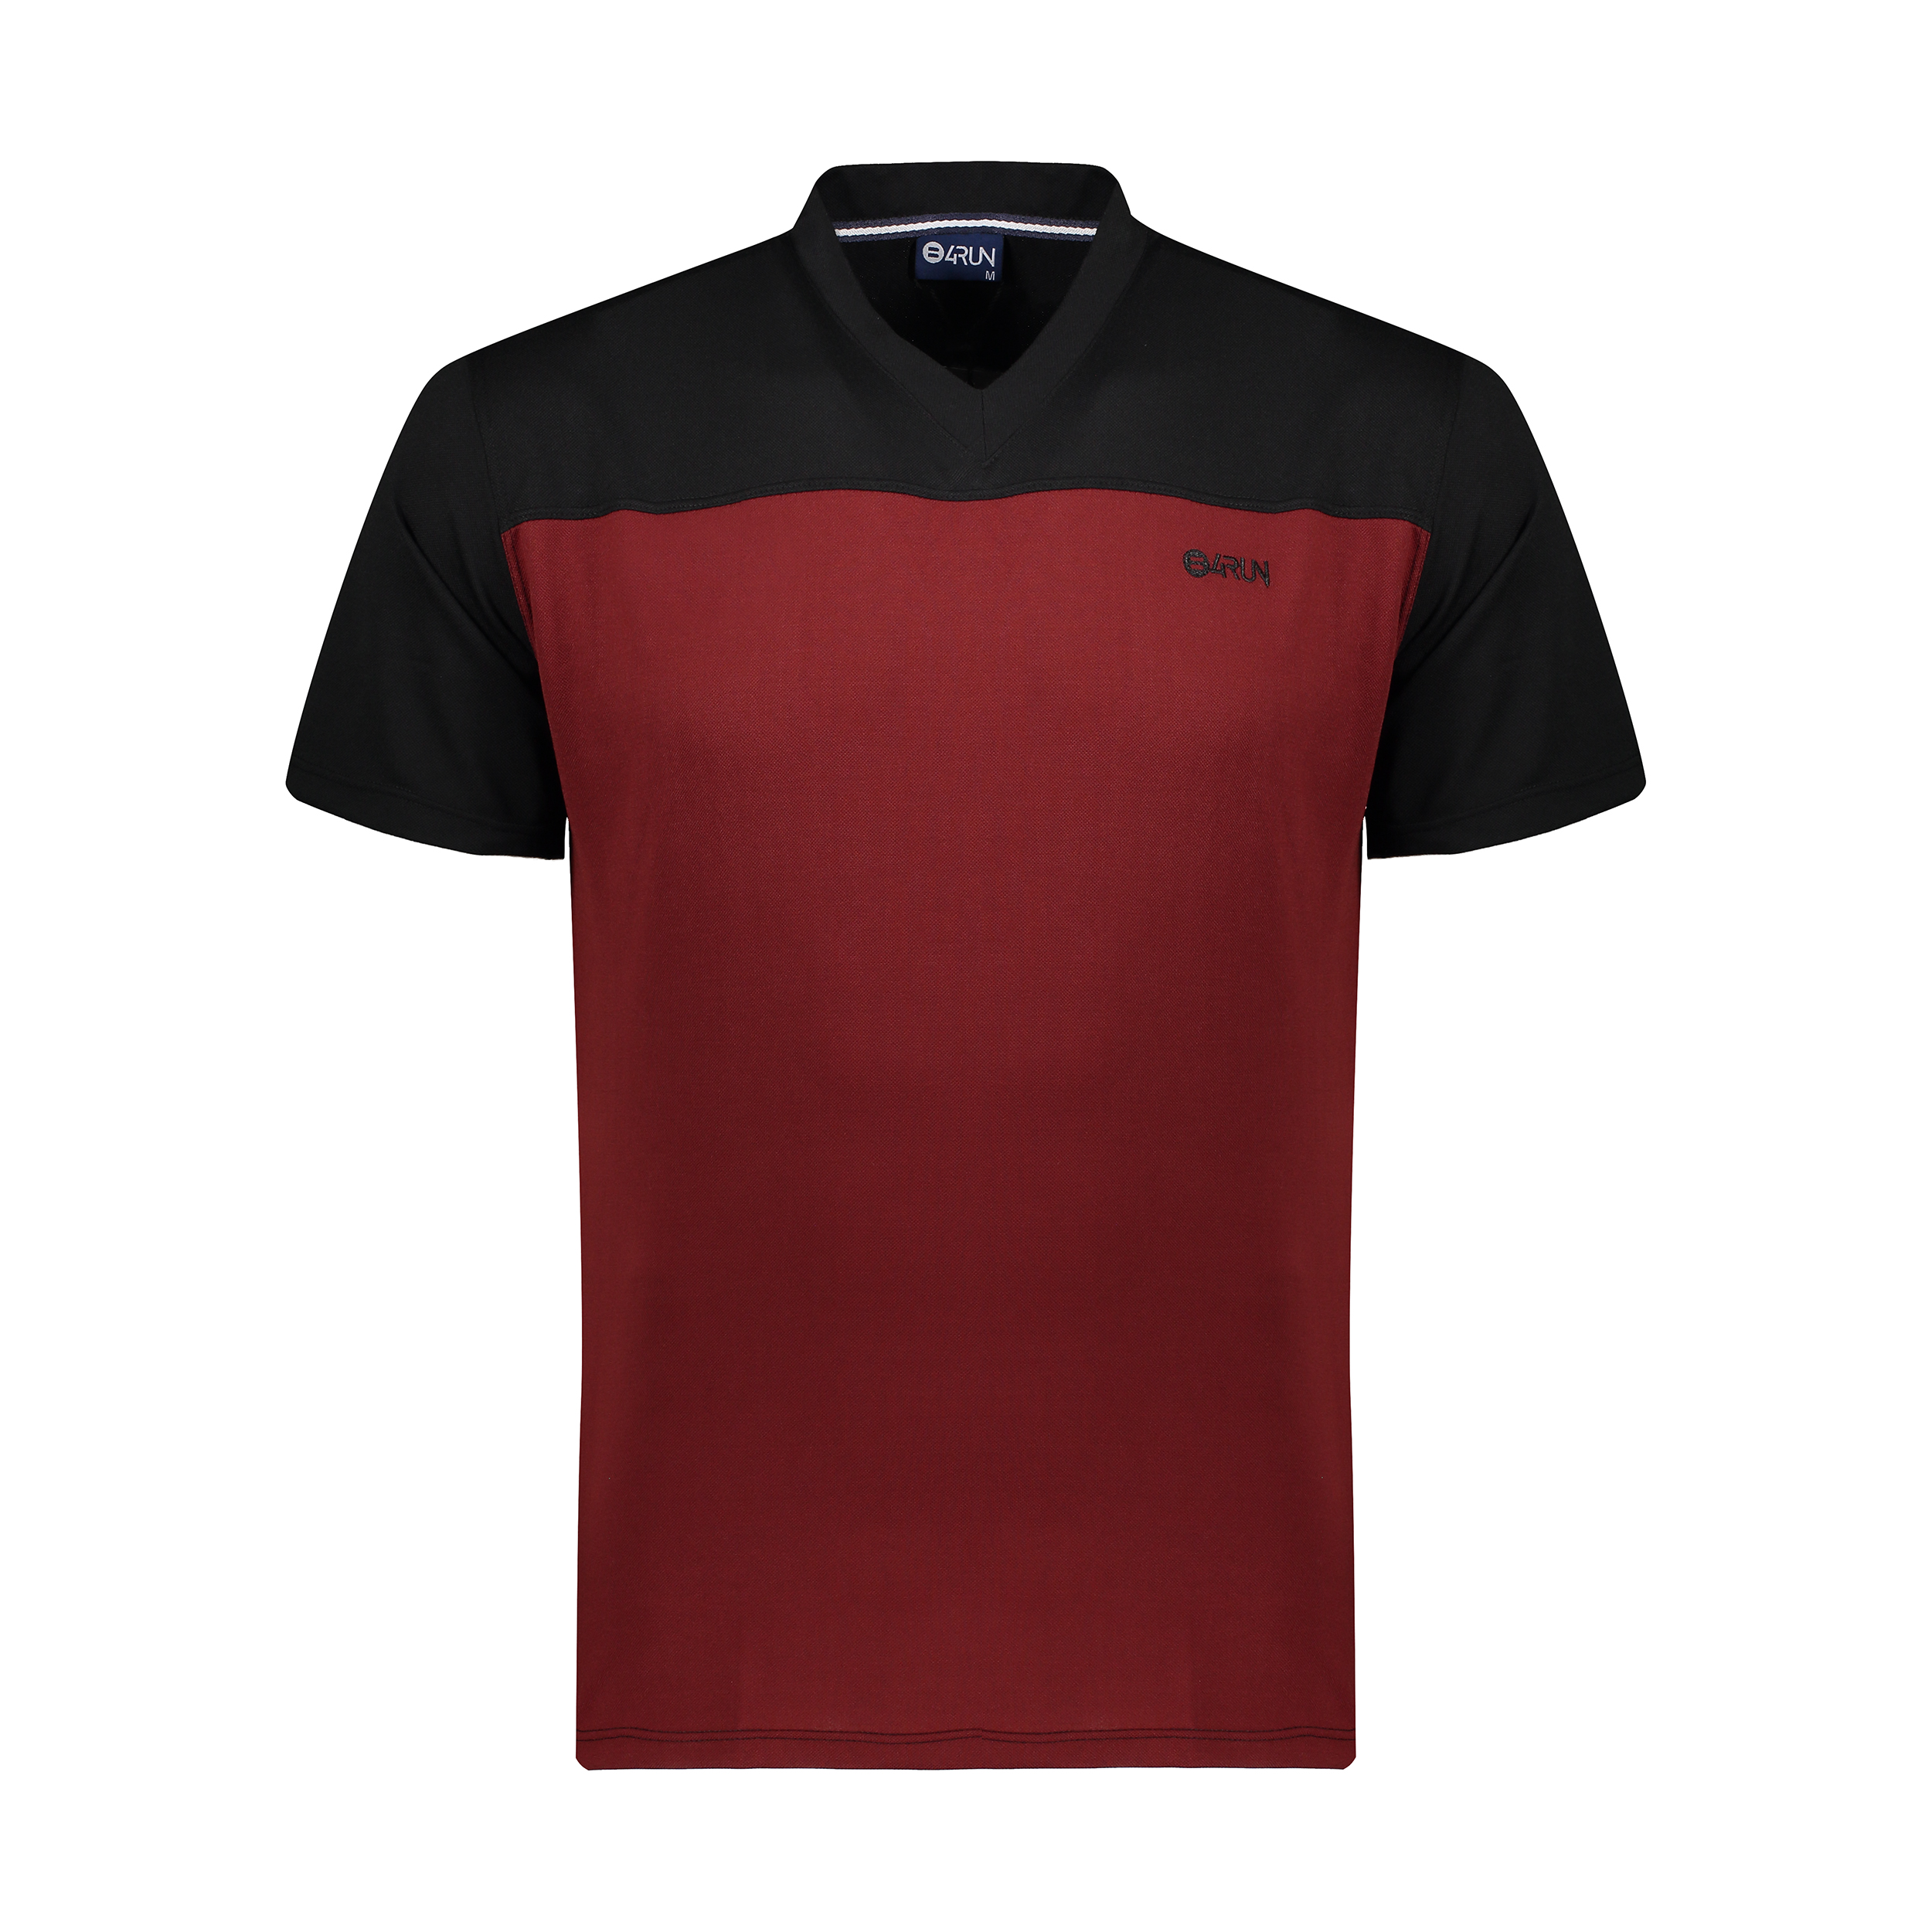 تی شرت ورزشی مردانه بی فور ران مدل 980317-9974 - مشکی - قرمز - 1